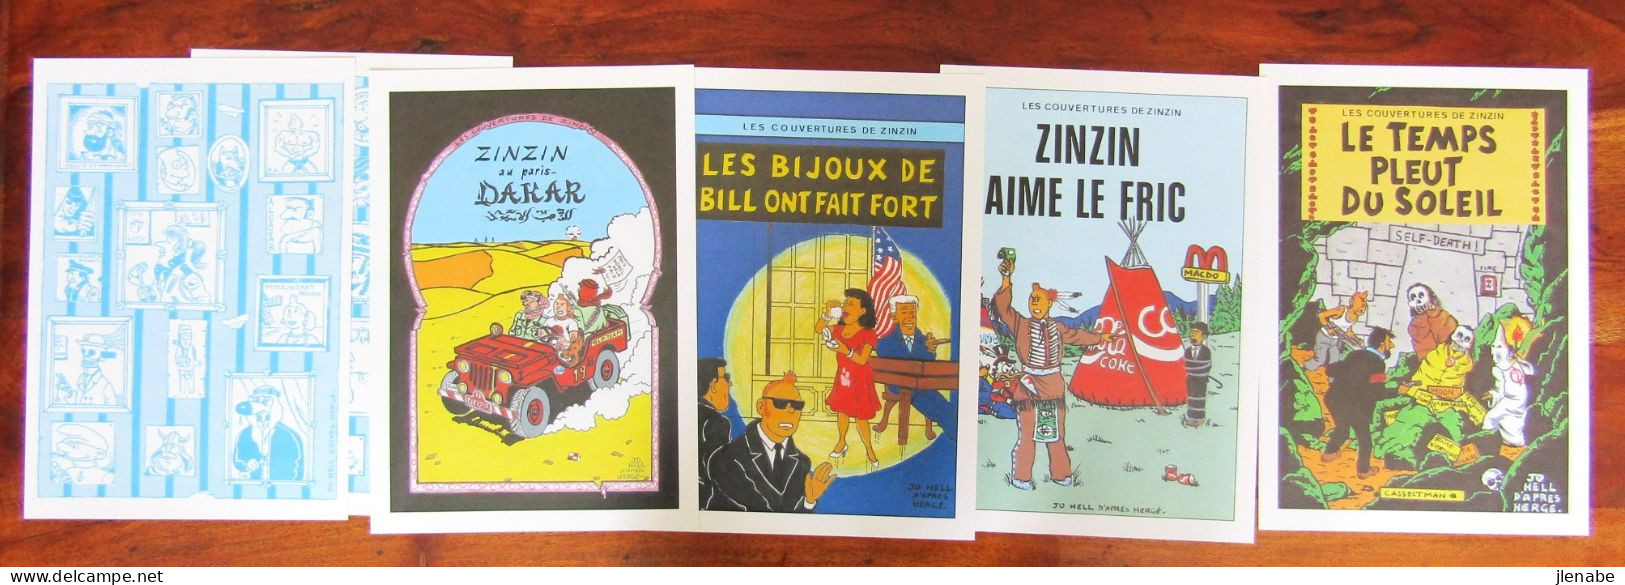 TINTIN Porte Folio Les Couvertures De ZINZIN 20 Pastiches + 1 Dédicace - Affiches & Offsets